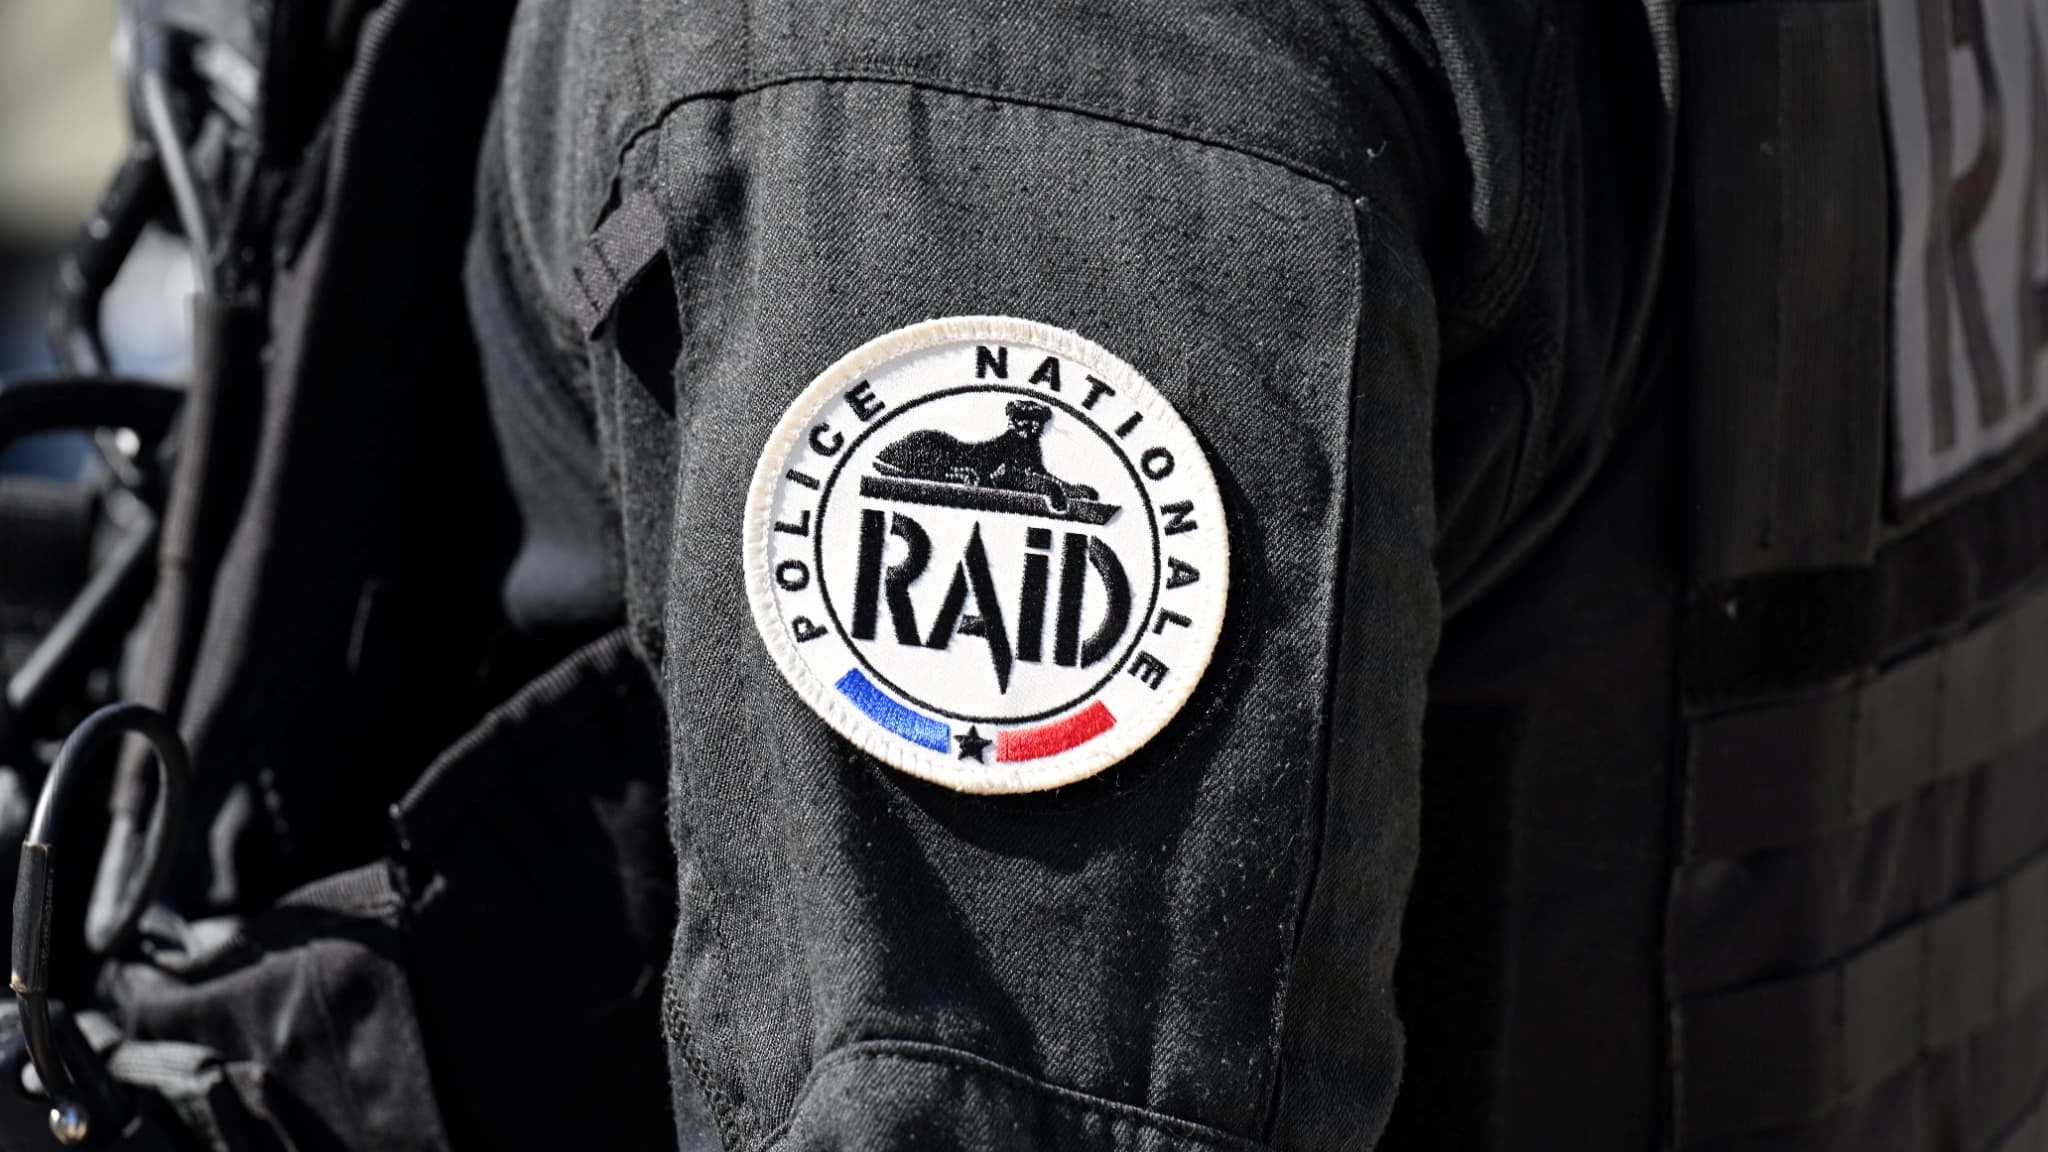 Le Raid, unité d'élite de la Police Nationale